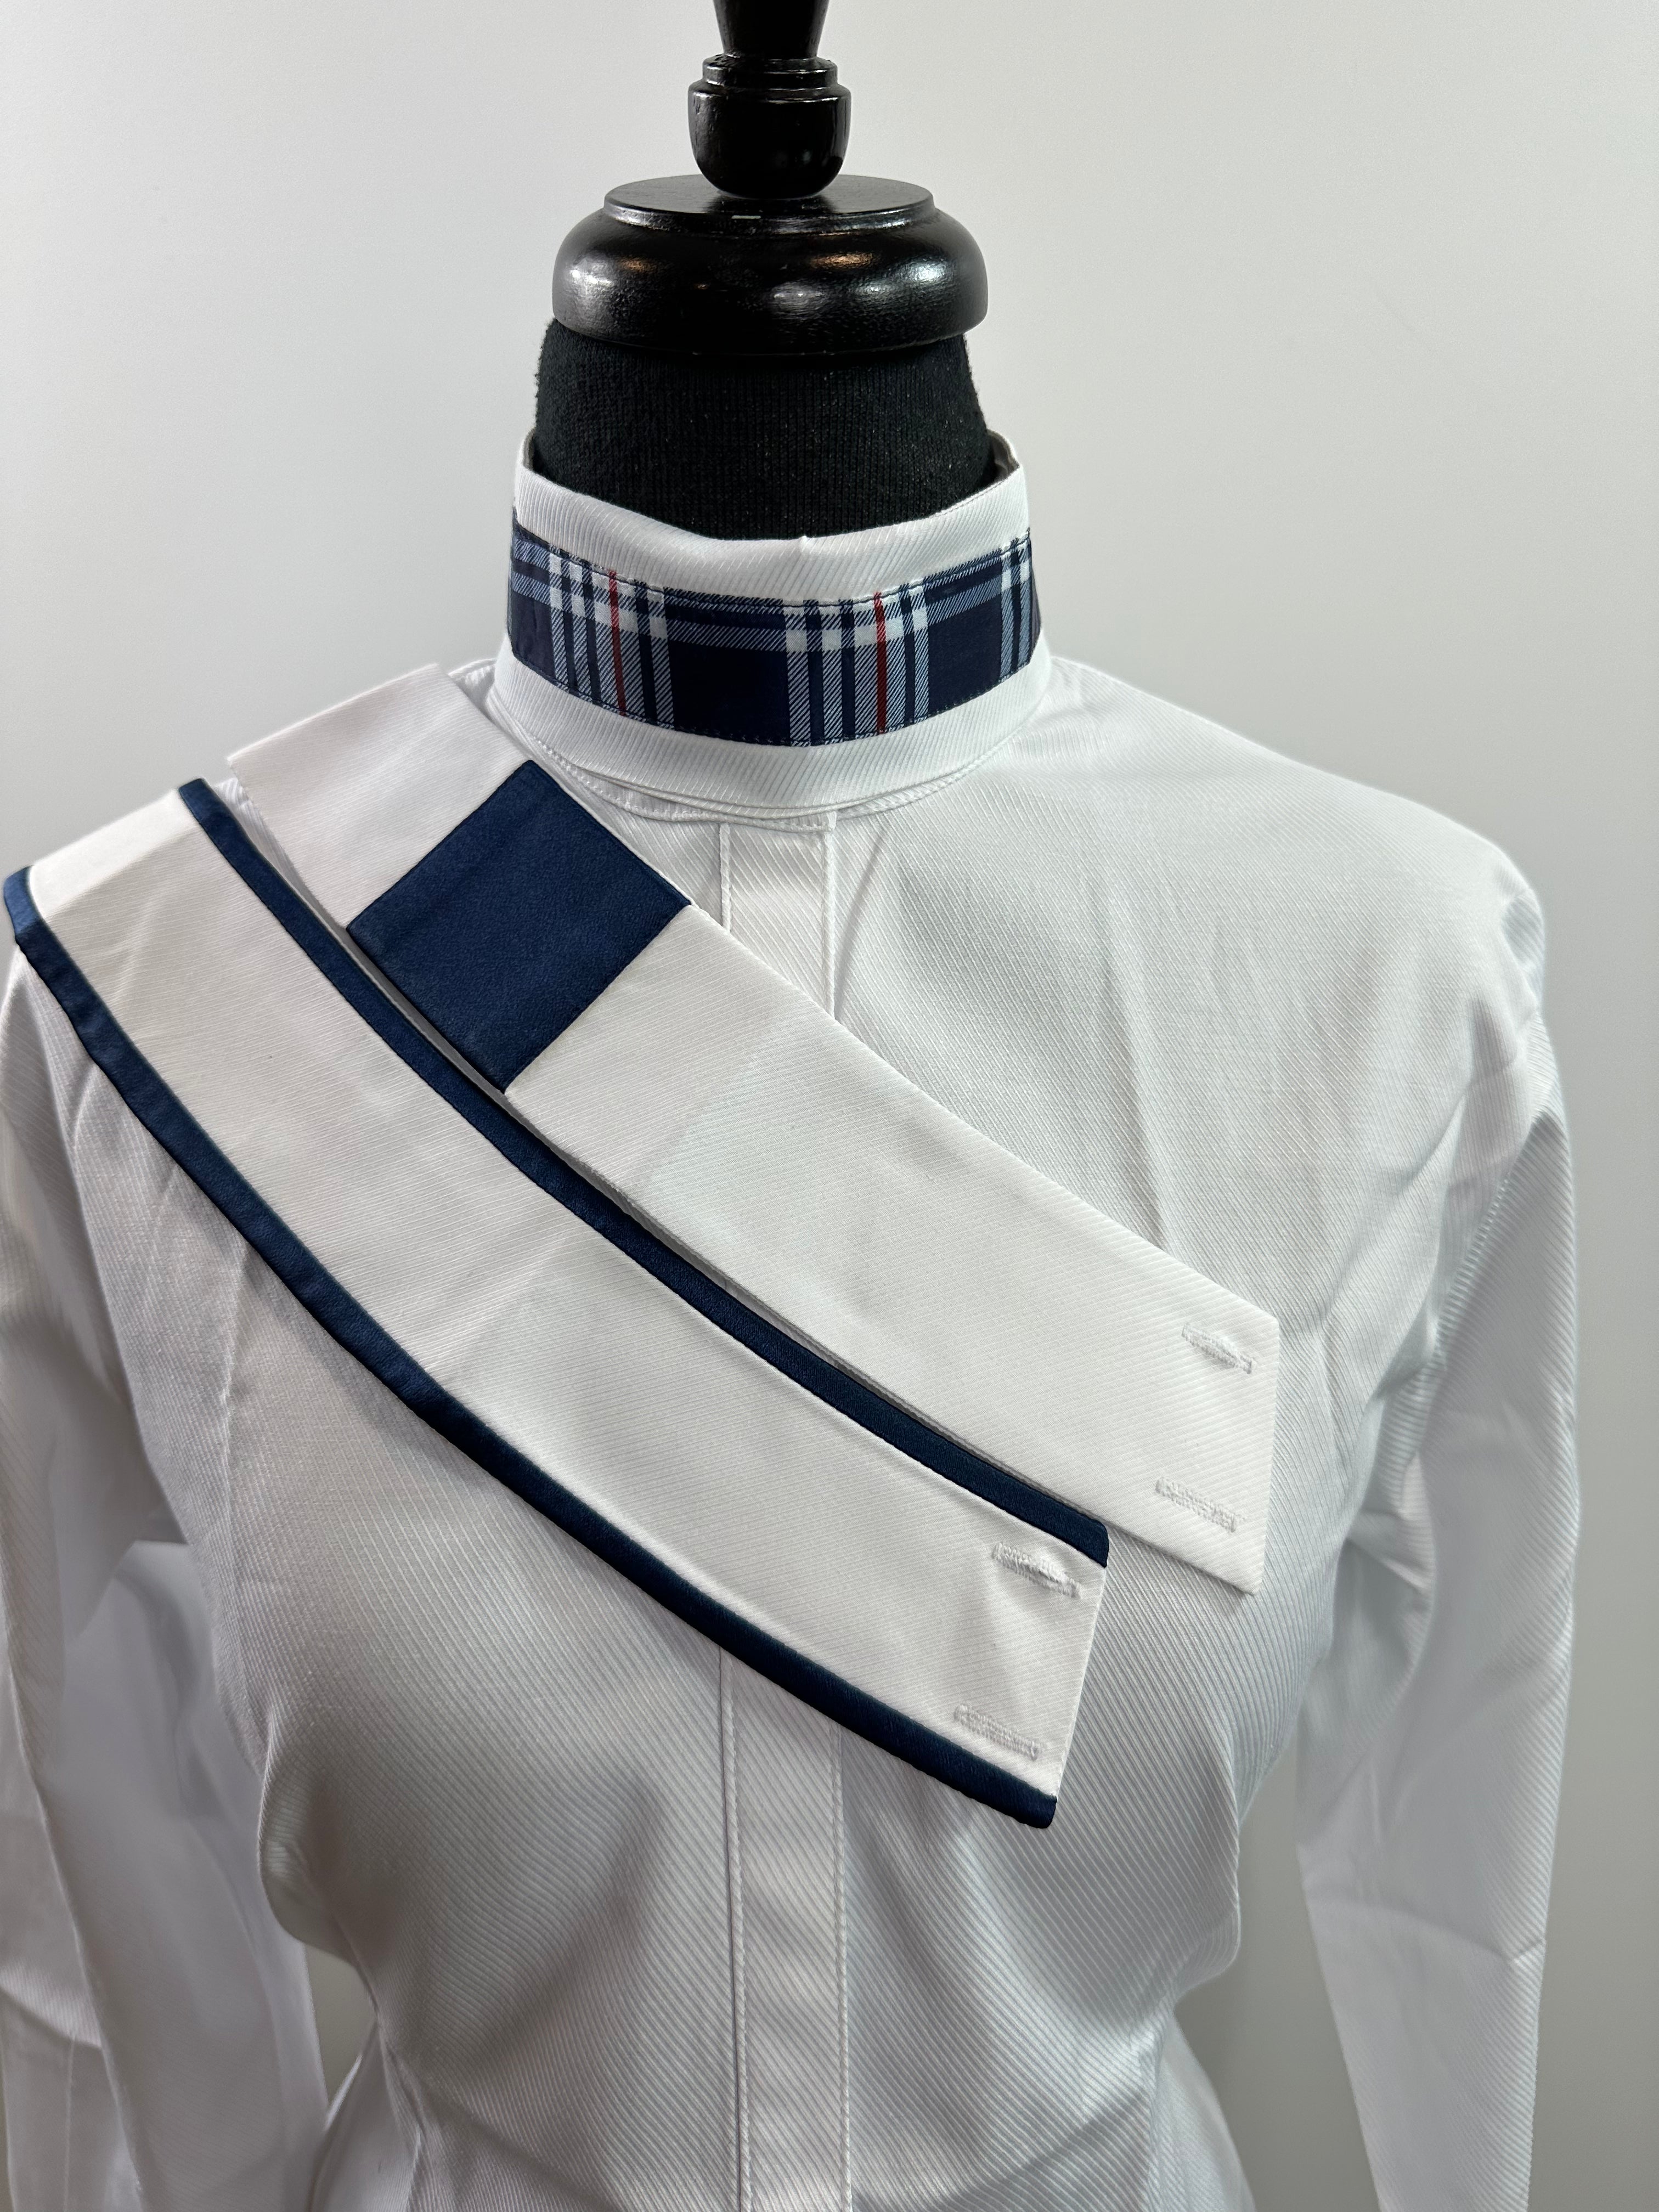 English Show Shirt Fabric Code 1924